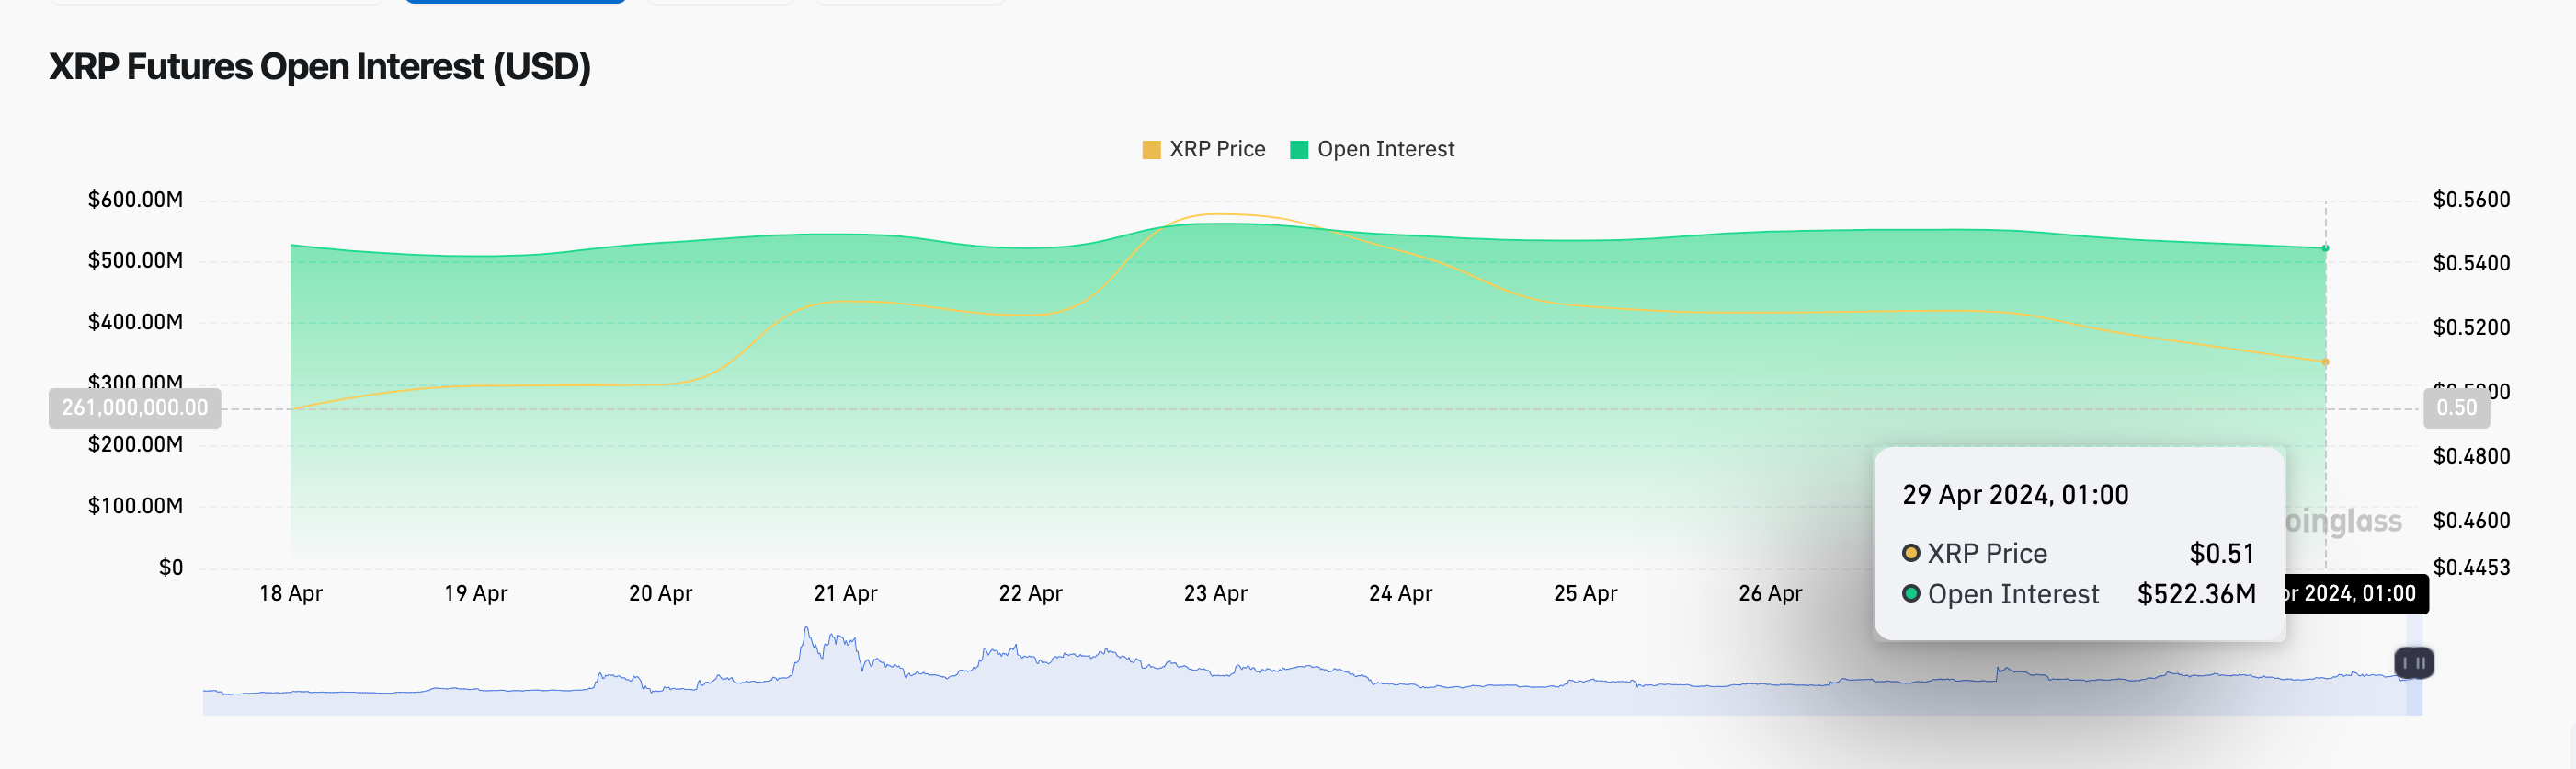 XRP Price vs Open Interest